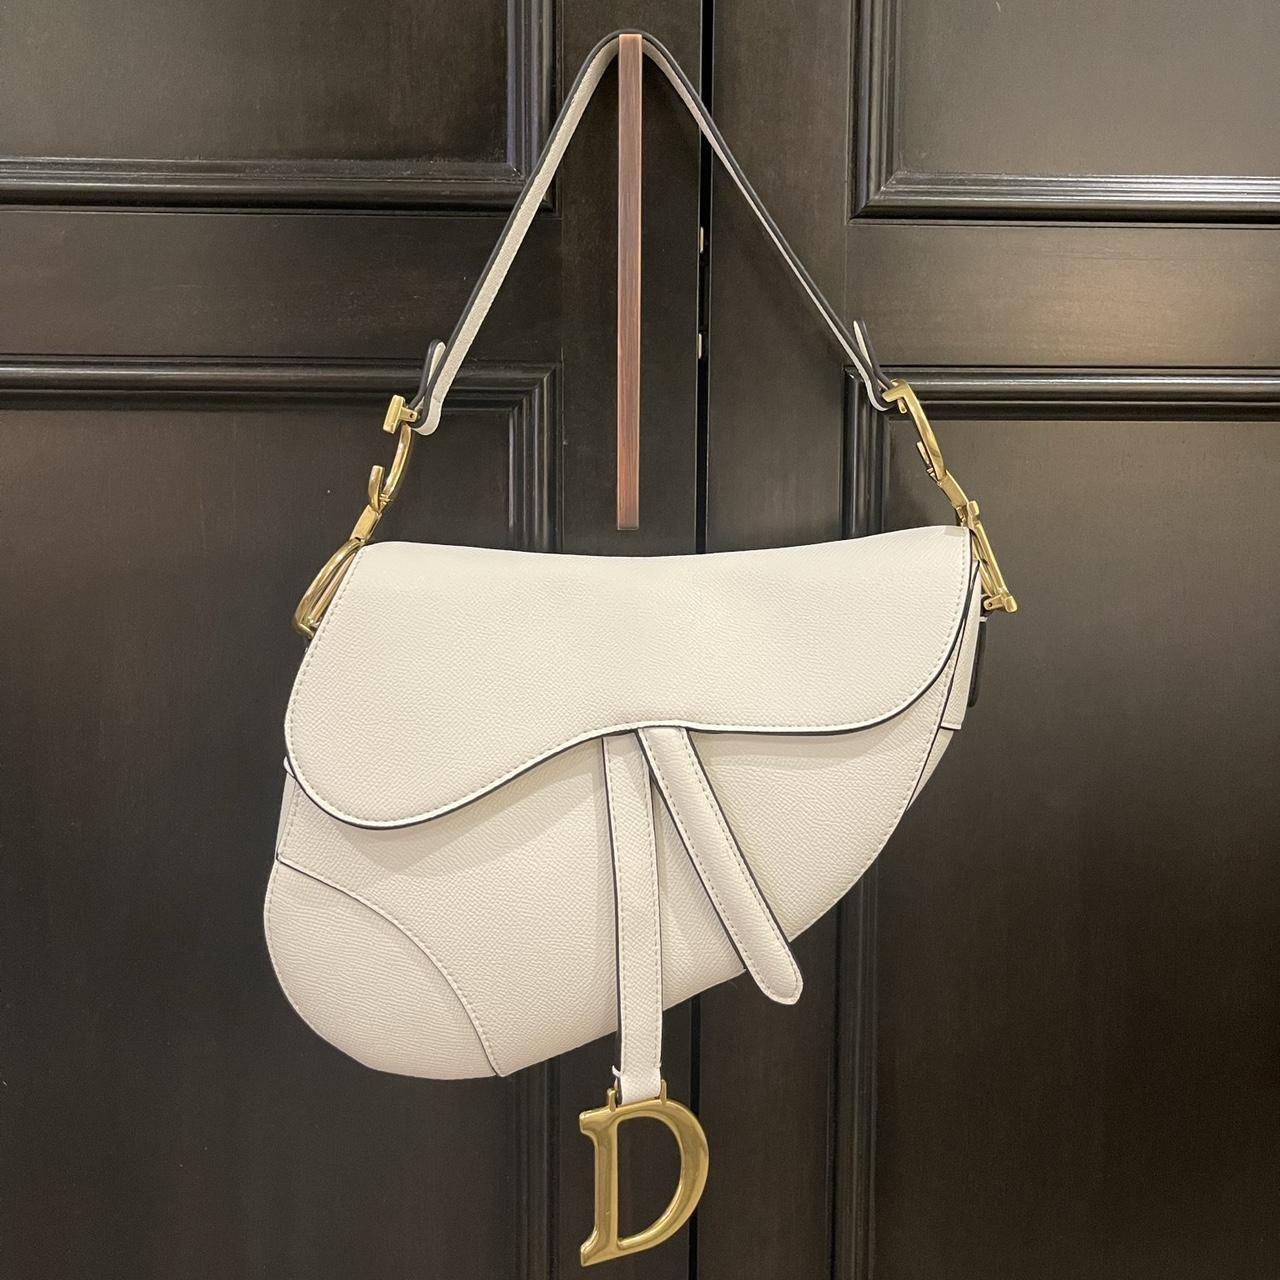 Dior handbag - Depop